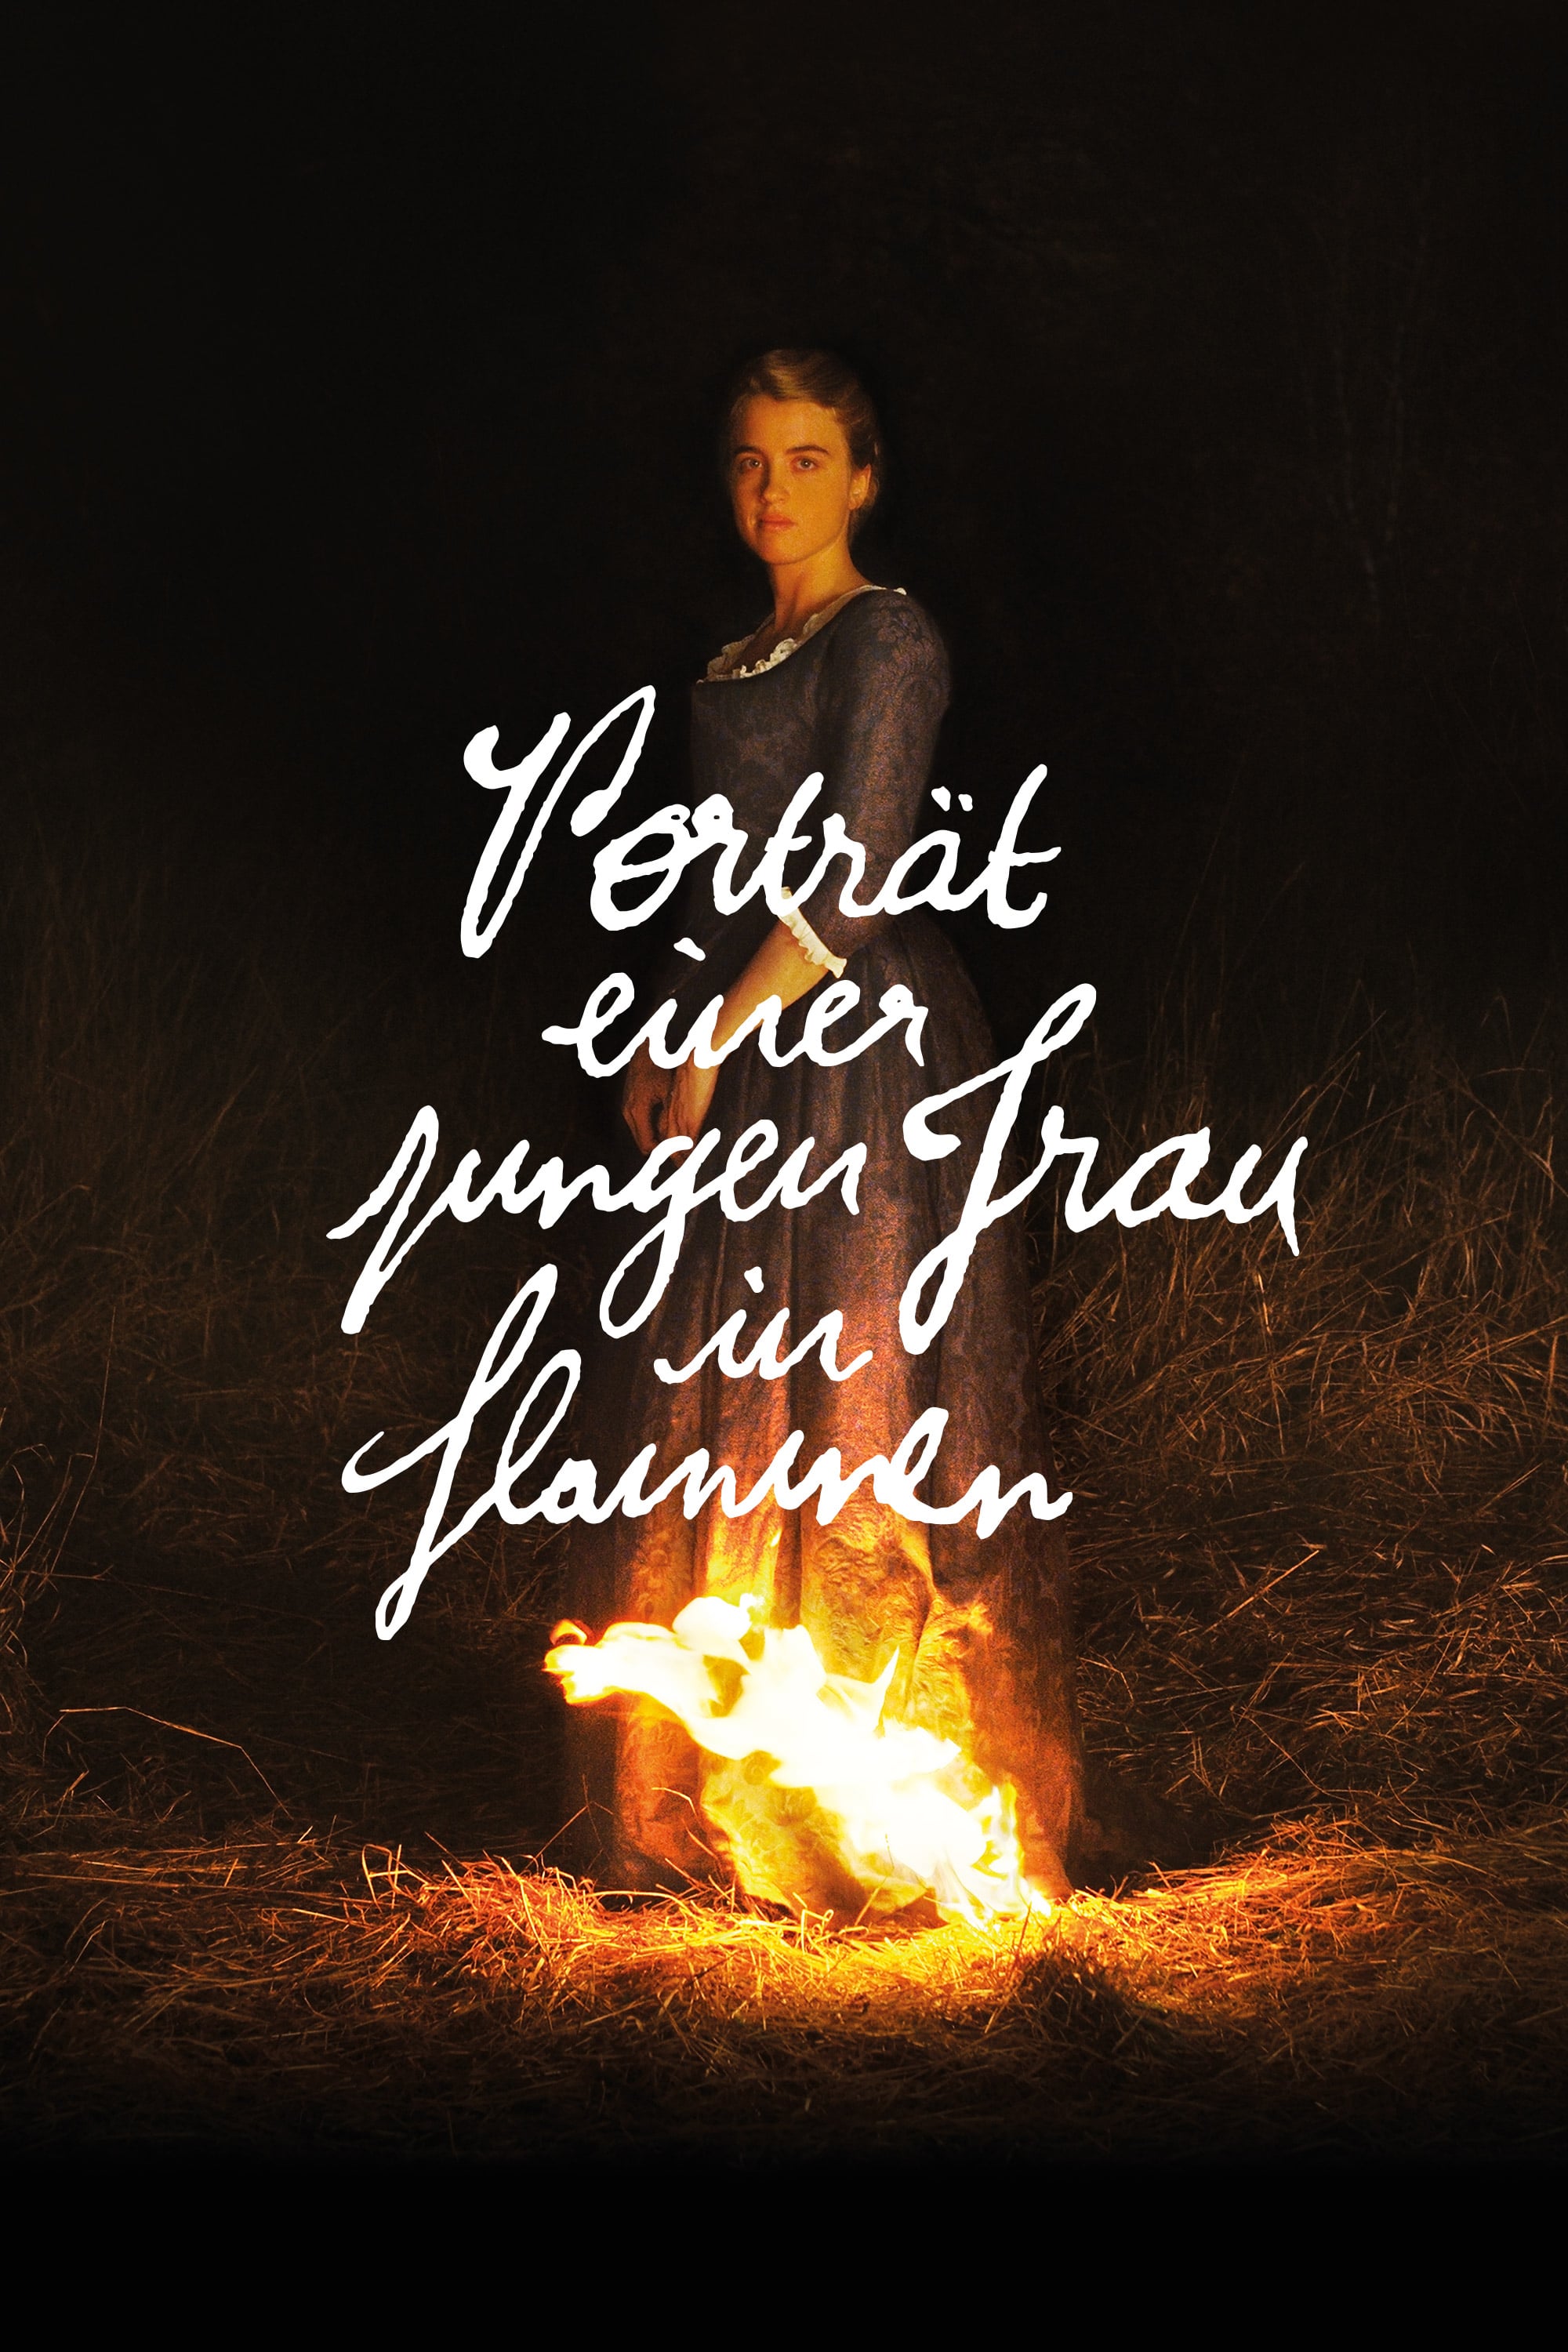 Portrait de la jeune fille en feu (2019)